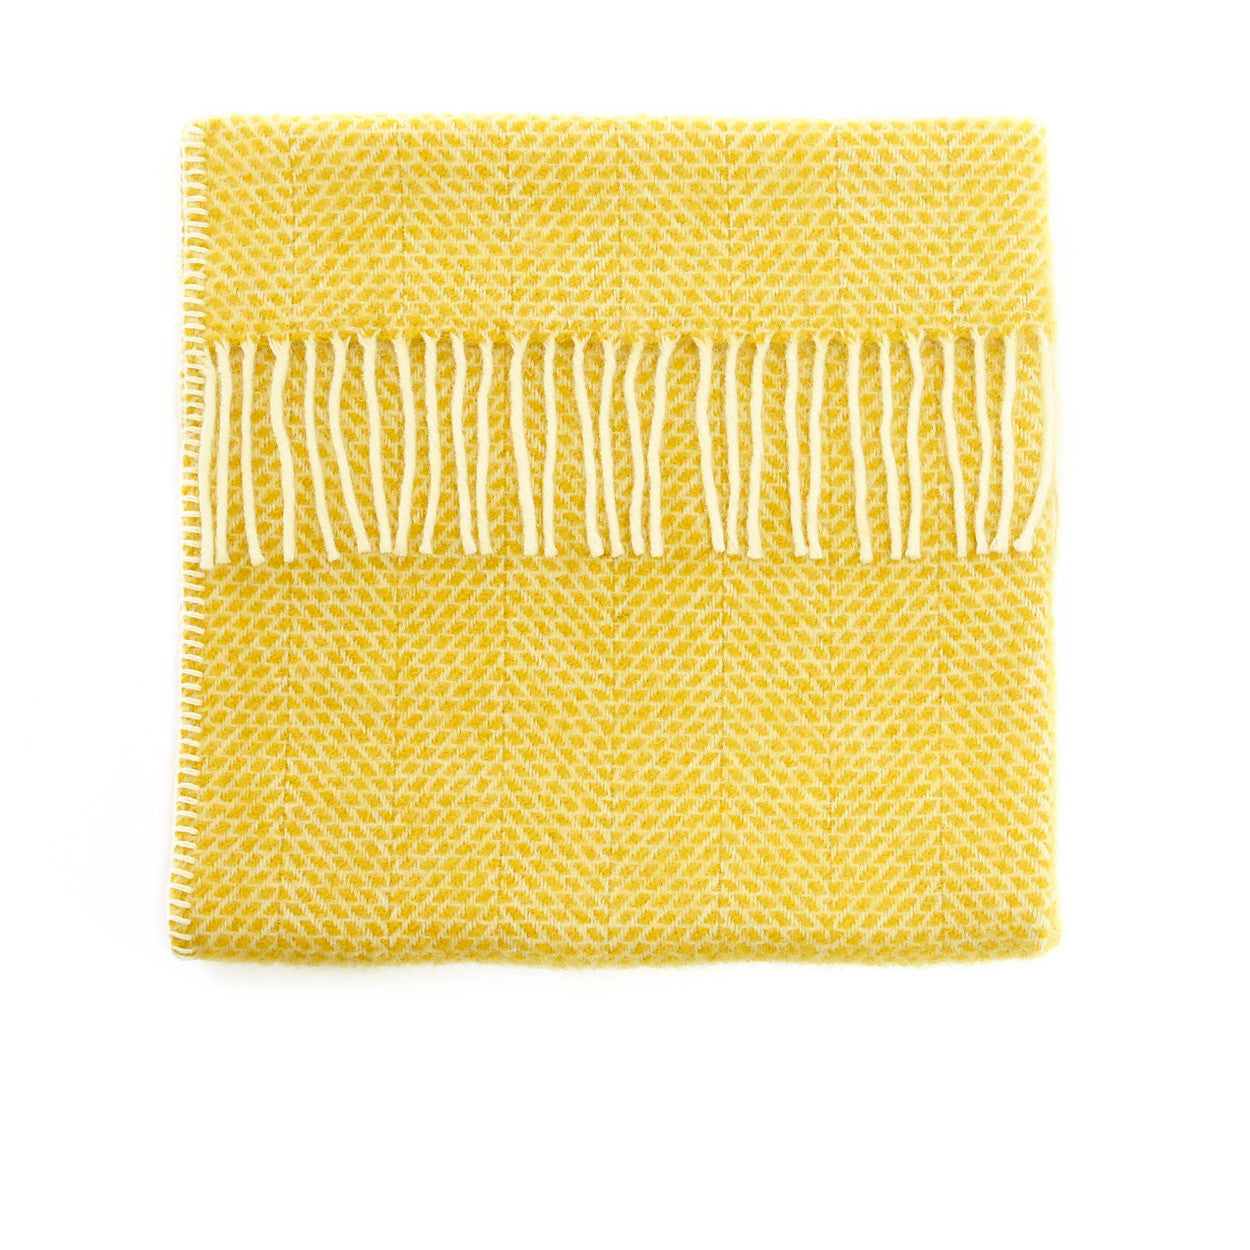 Pram Blanket in Beehive Yellow by Tweedmill